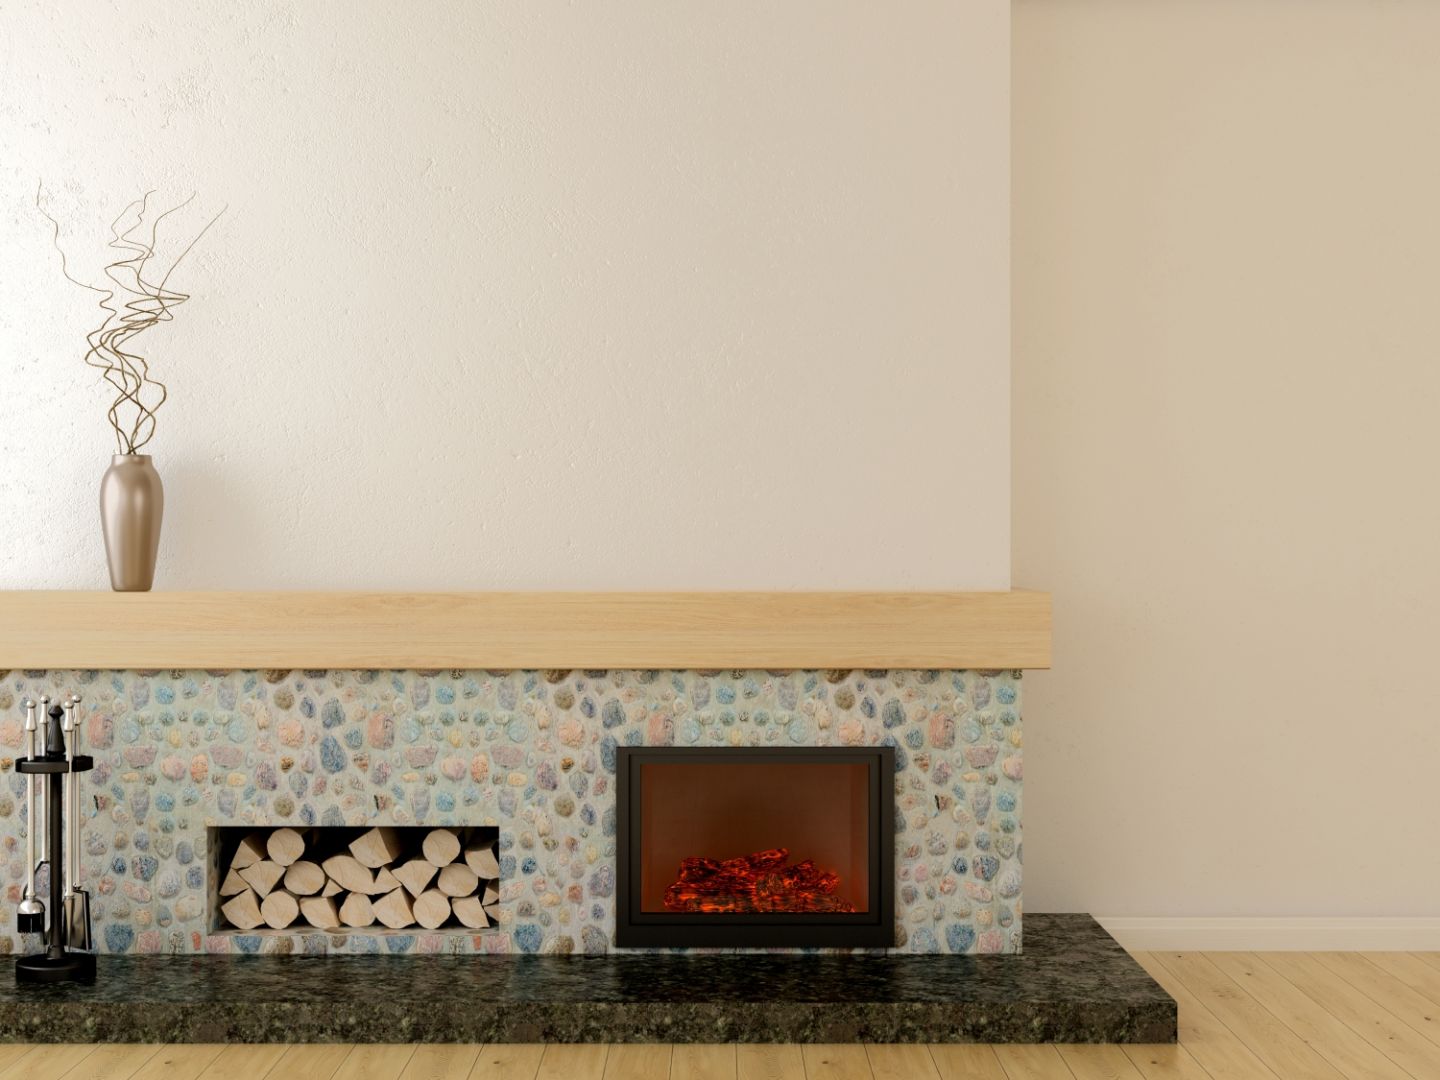 Przykład skromnie zaaranżowanego kominka z ciekawą, kamienną elewacją. Fot. Shutterstock